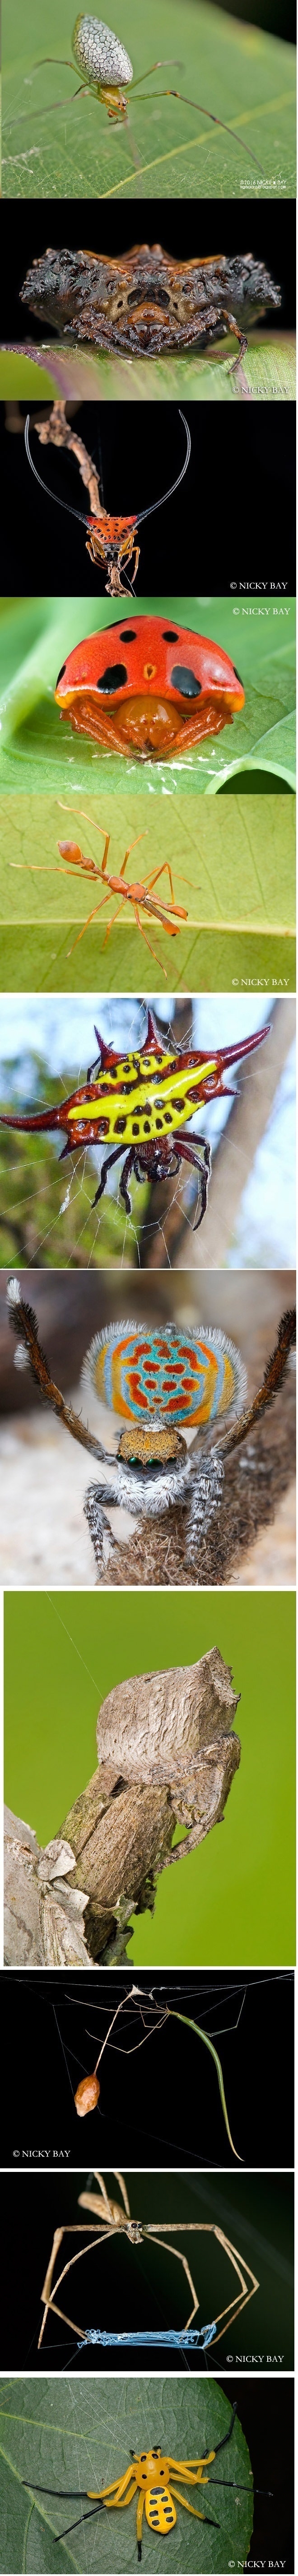 Bizarre spiders species